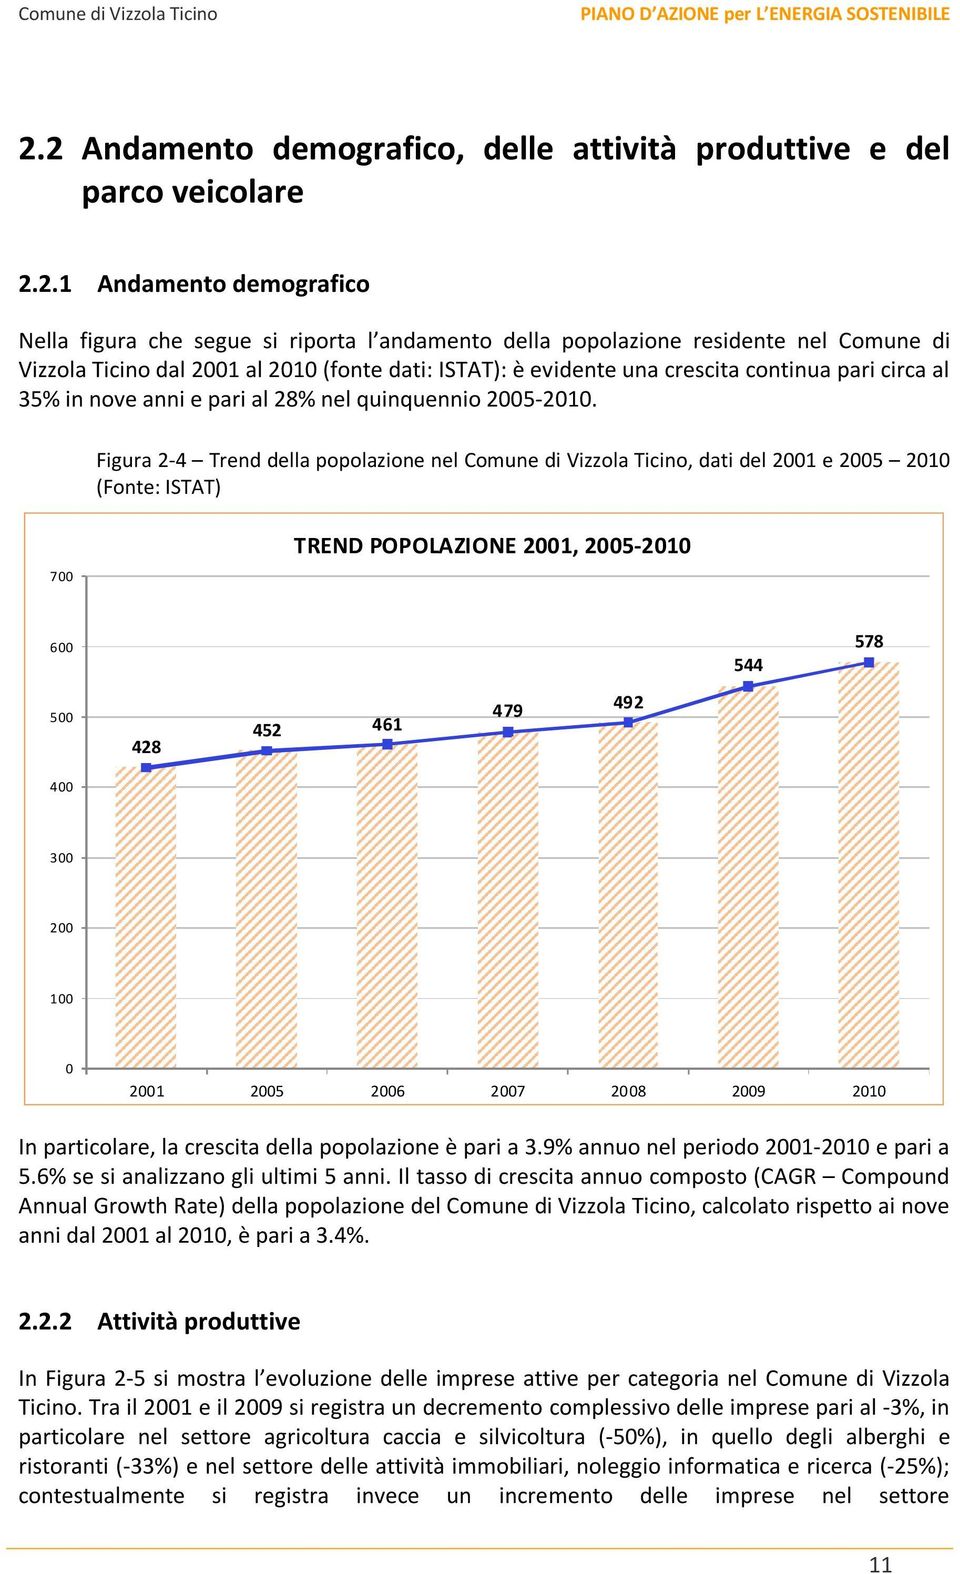 Figura 2-4 Trend della popolazione nel Comune di Vizzola Ticino, dati del 2001 e 2005 2010 (Fonte: ISTAT) 700 TREND POPOLAZIONE 2001, 2005-2010 600 544 578 500 428 452 461 479 492 400 300 200 100 0